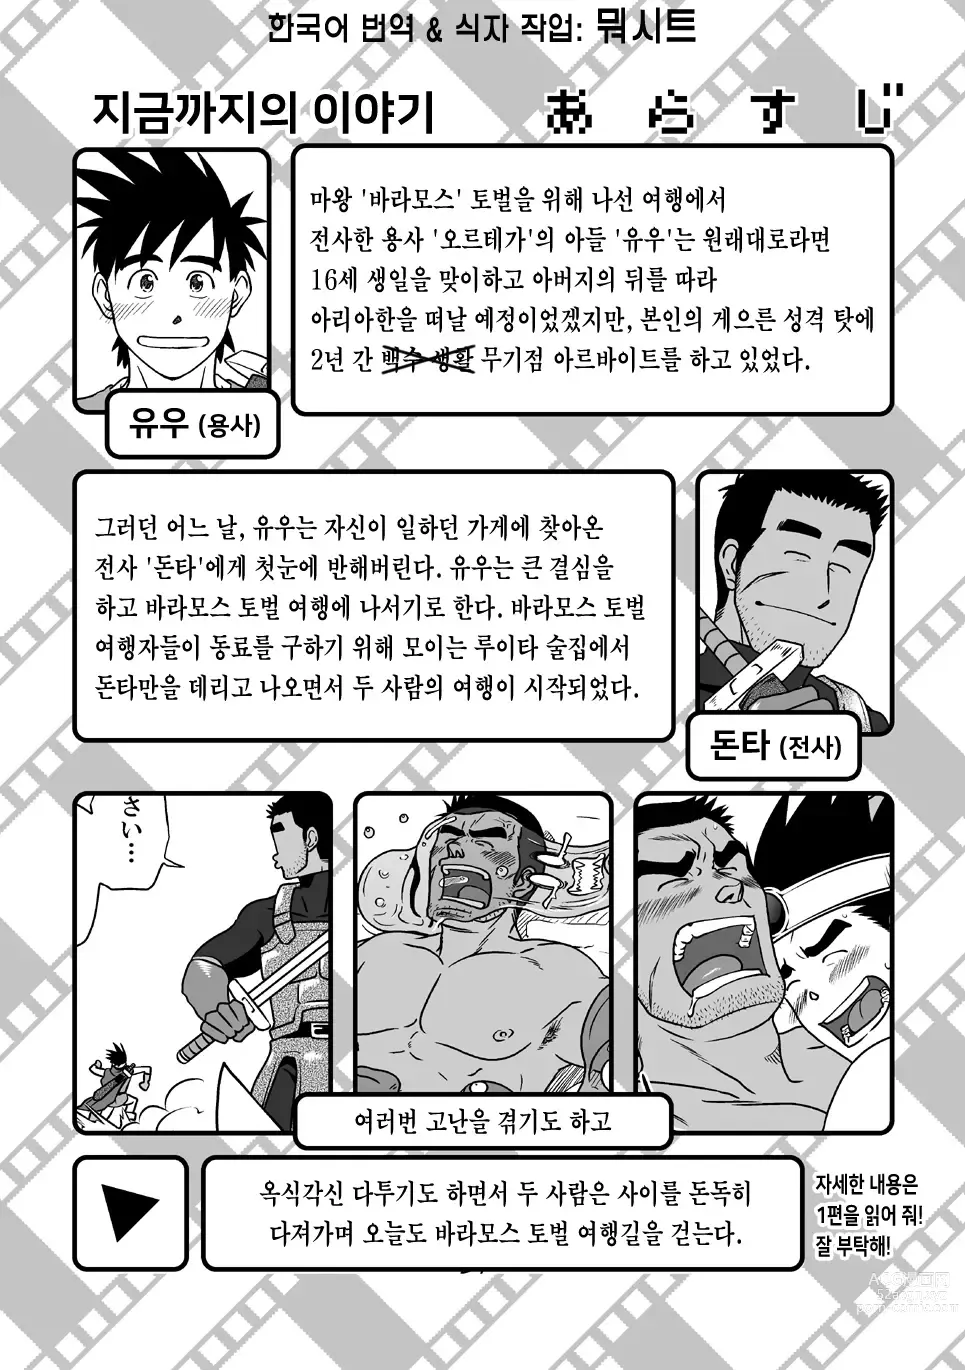 Page 2 of doujinshi PARO QUE 2